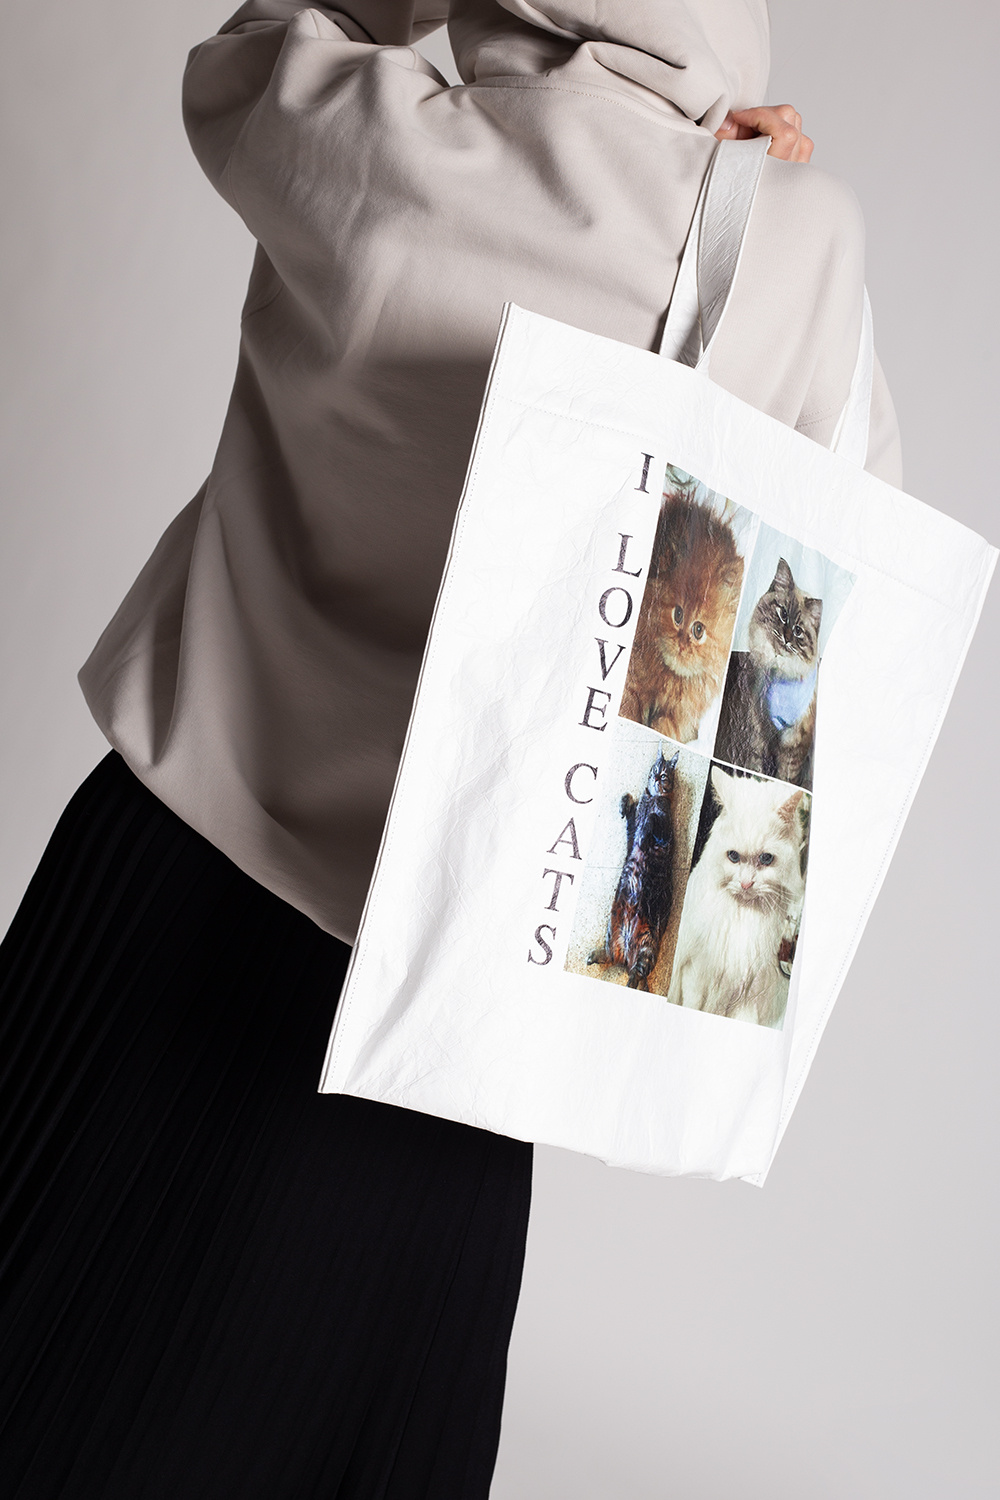 Balenciaga Shopper bag